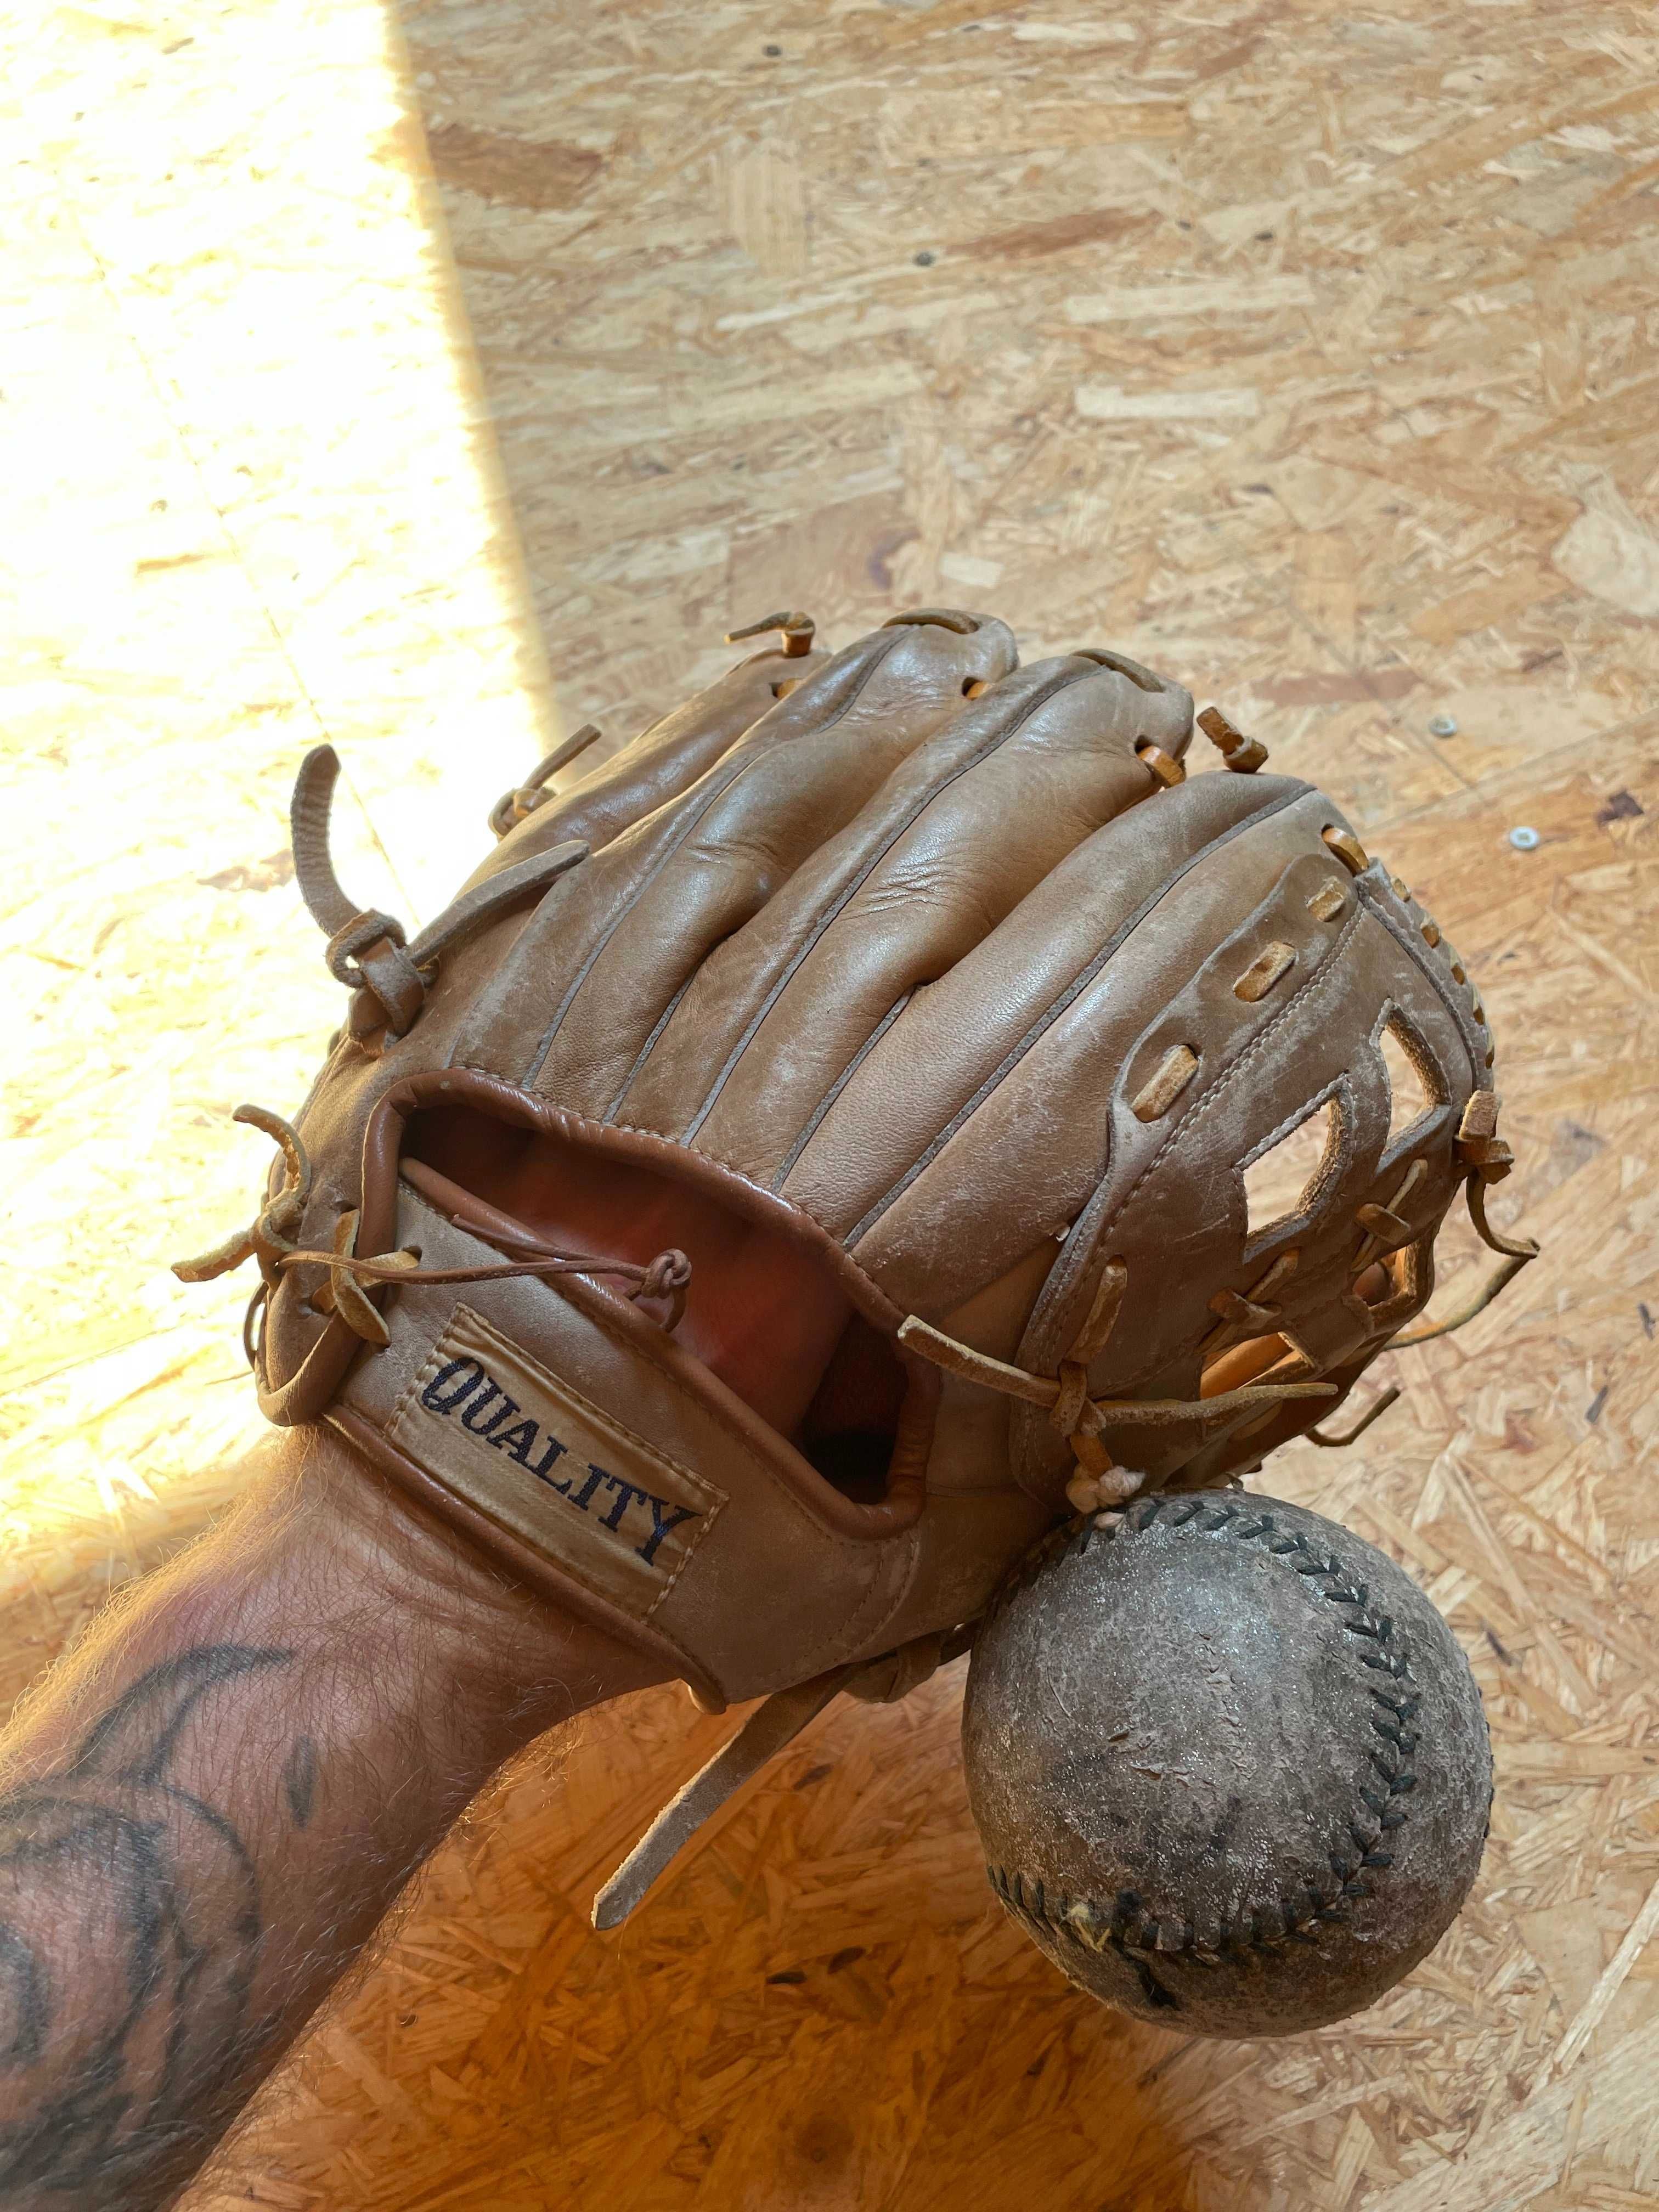 Vintage rękawica baseball softball z piłką gadżet do zdjęć